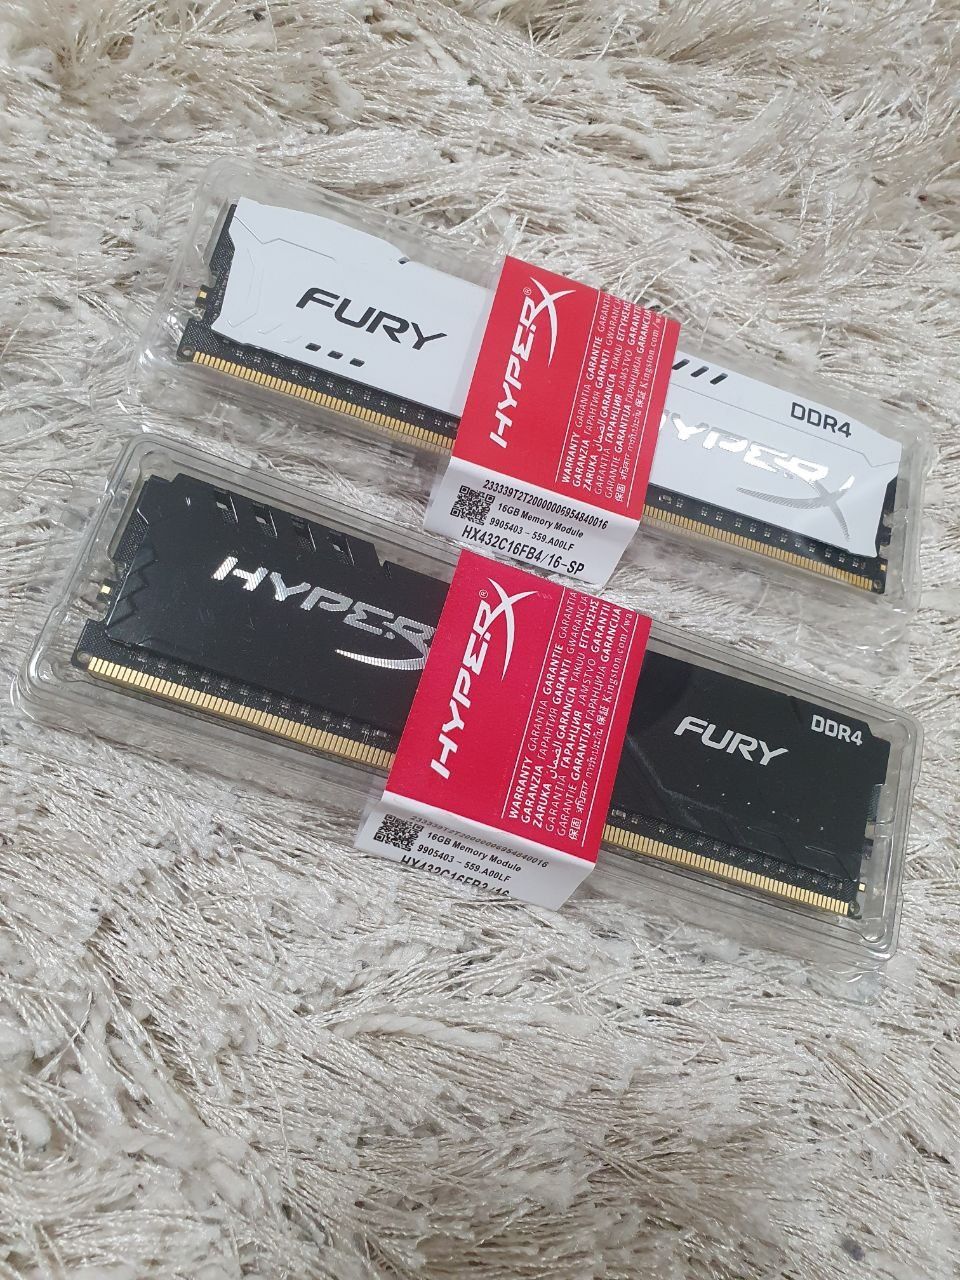 Hyper X HyperX Fury DDR4 16Gb 3200 МГц, оперативная память Kingston